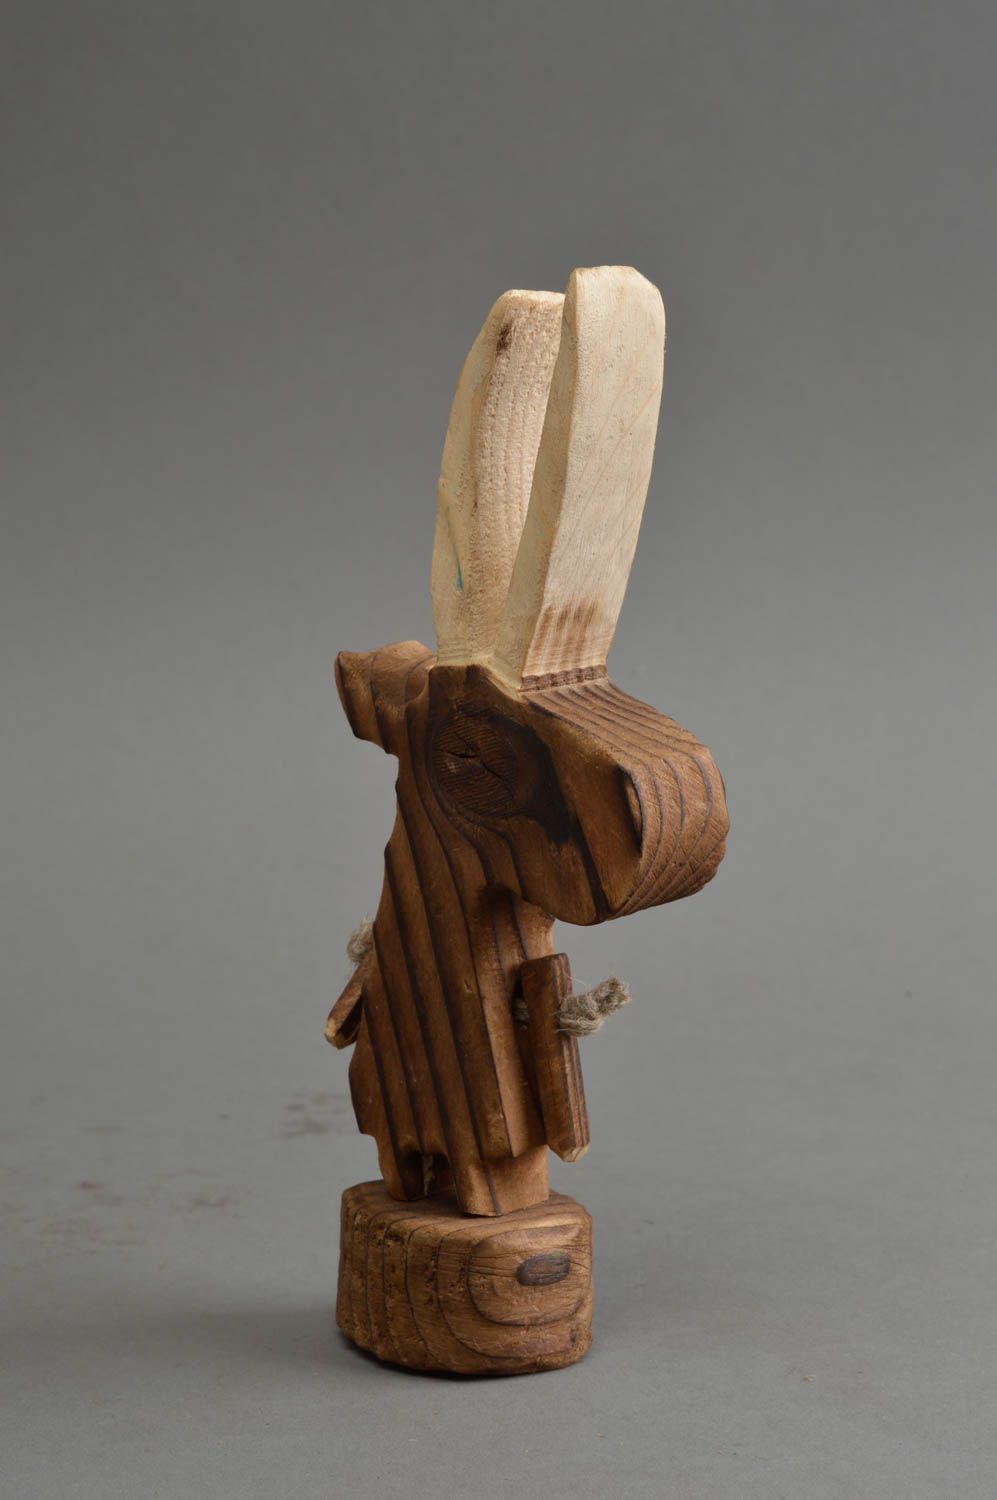 Крохотная статуэтка из дерева в виде козла авторский сувенир или декор фото 3